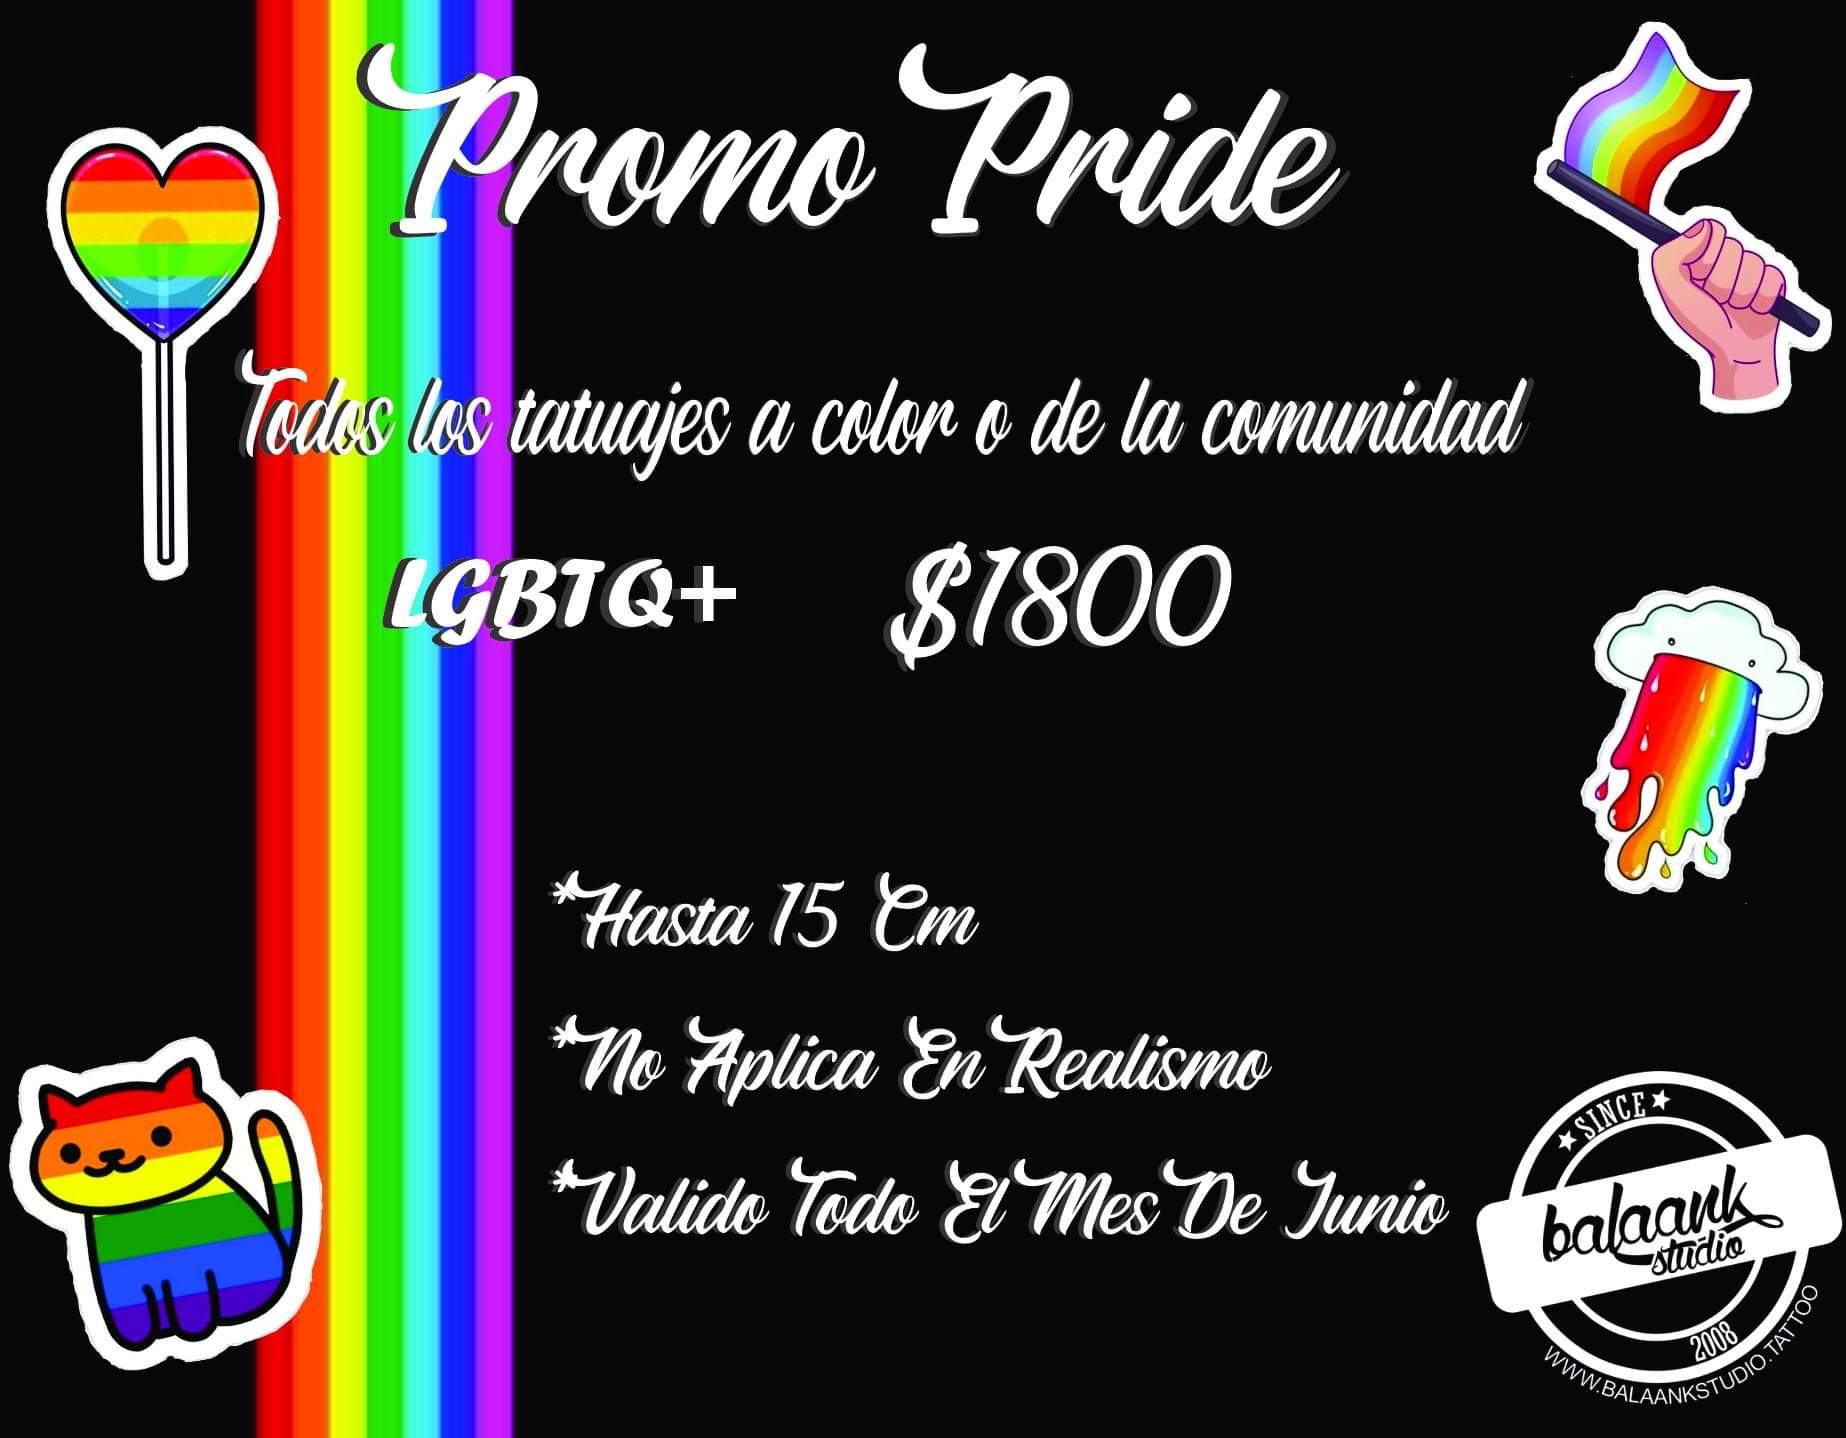 Promo Pride LGBTQ+